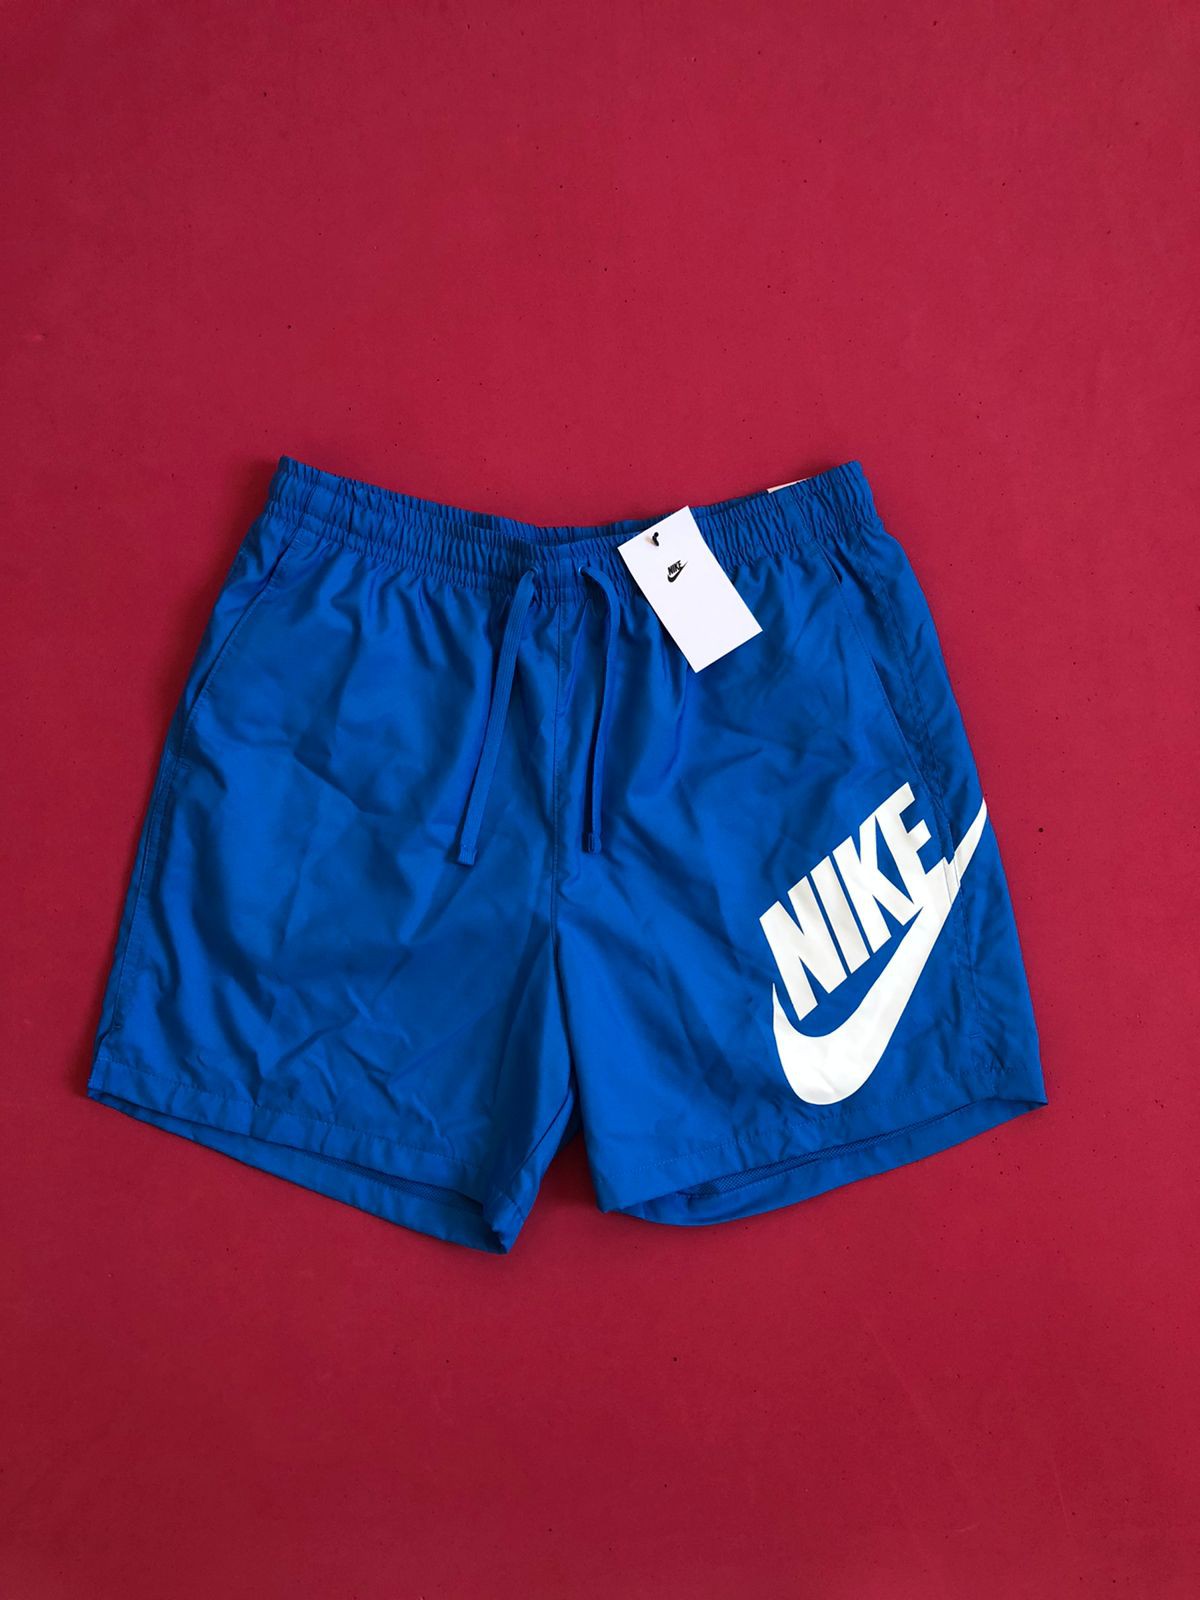 Shorts Nike Sportswear Masculina Azul - GNB Store